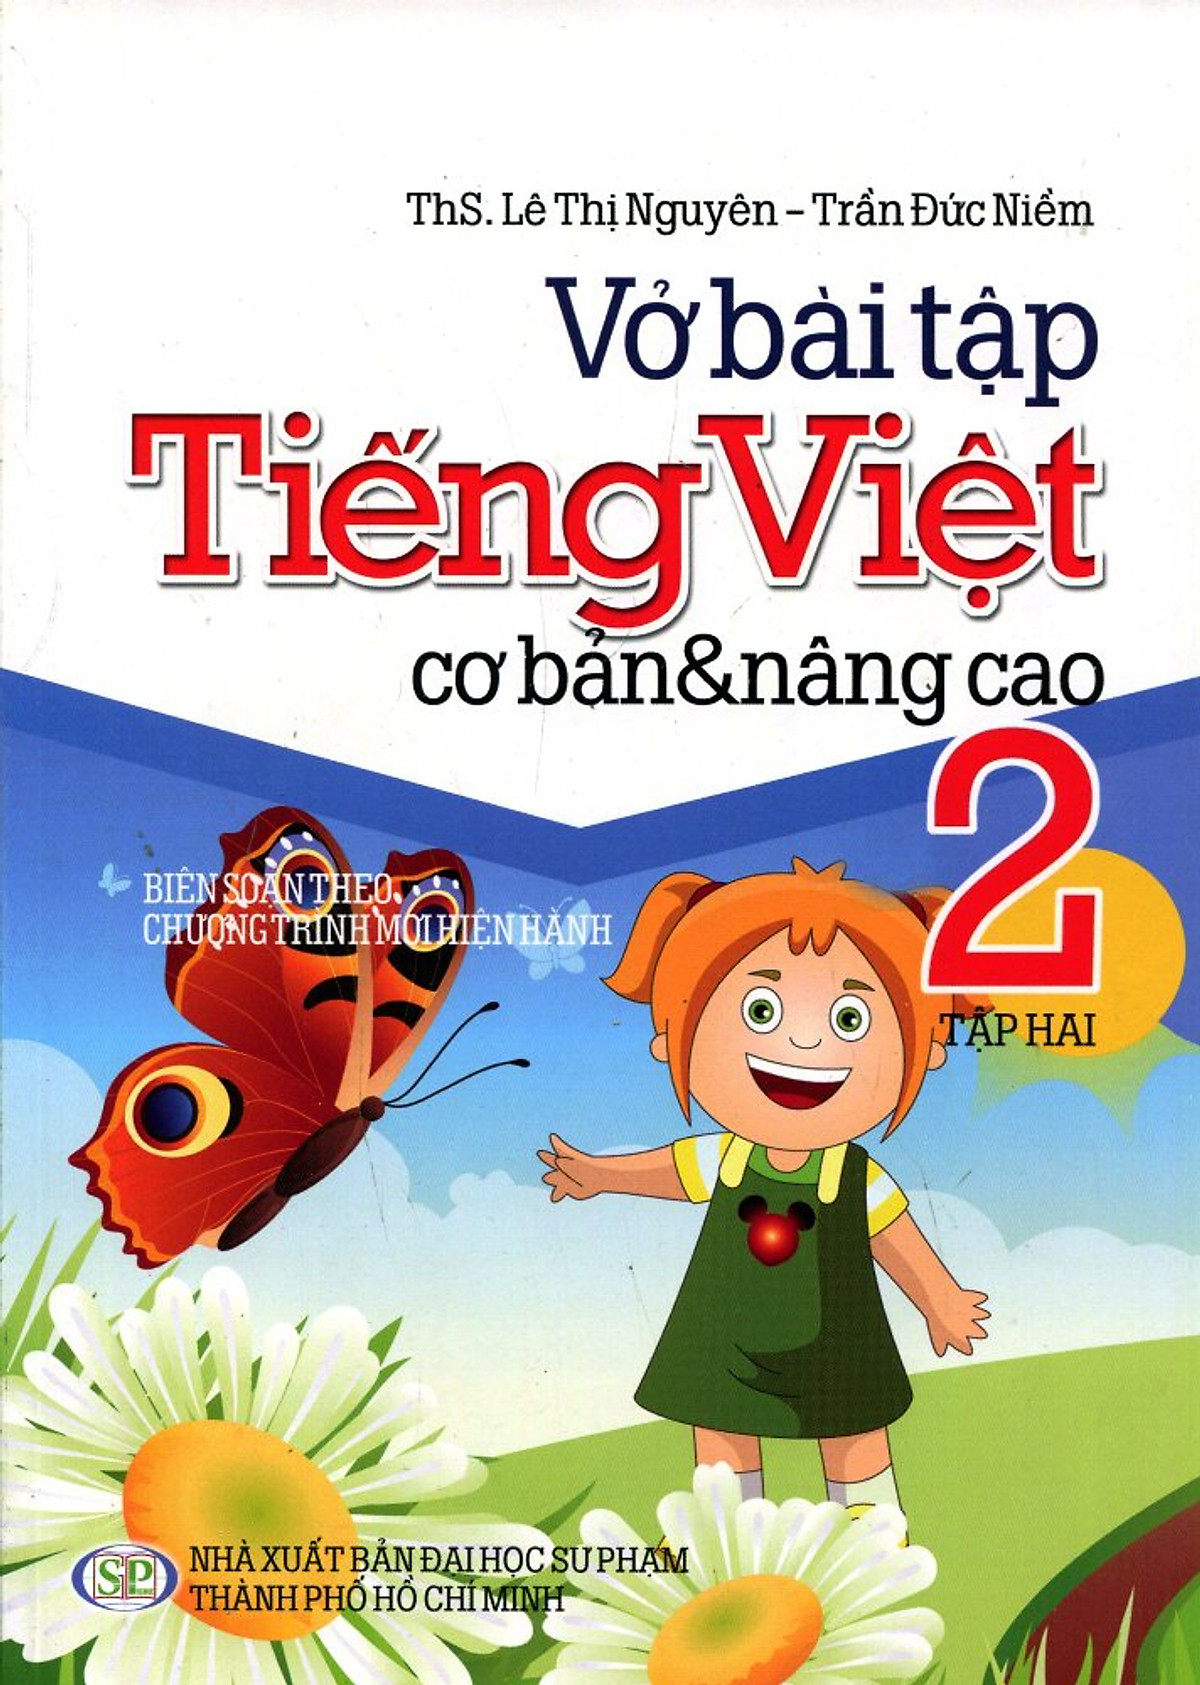 Vở Bài Tập Cơ Bản Và Nâng Cao Tiếng Việt Lớp 2 (Tập 2)